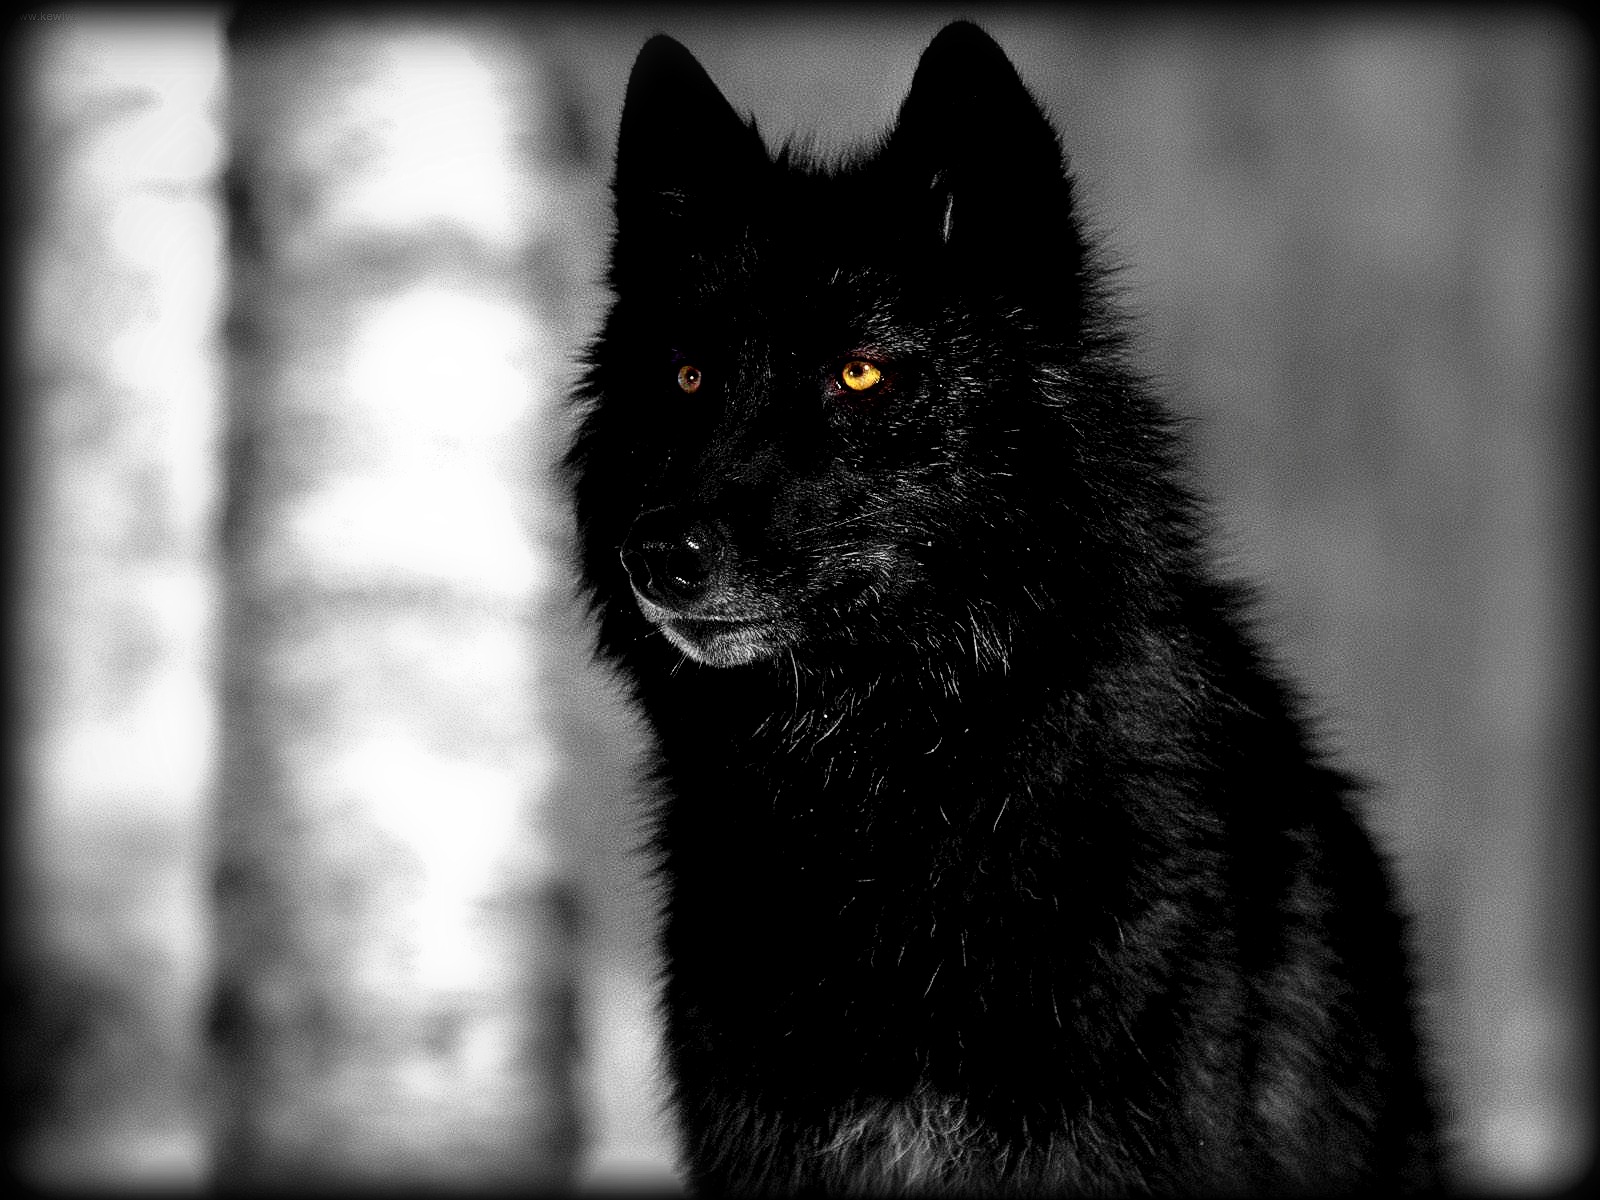  wolf 2013 black wolf 2013 black wolf 2013 black wolf 2013 black wolf